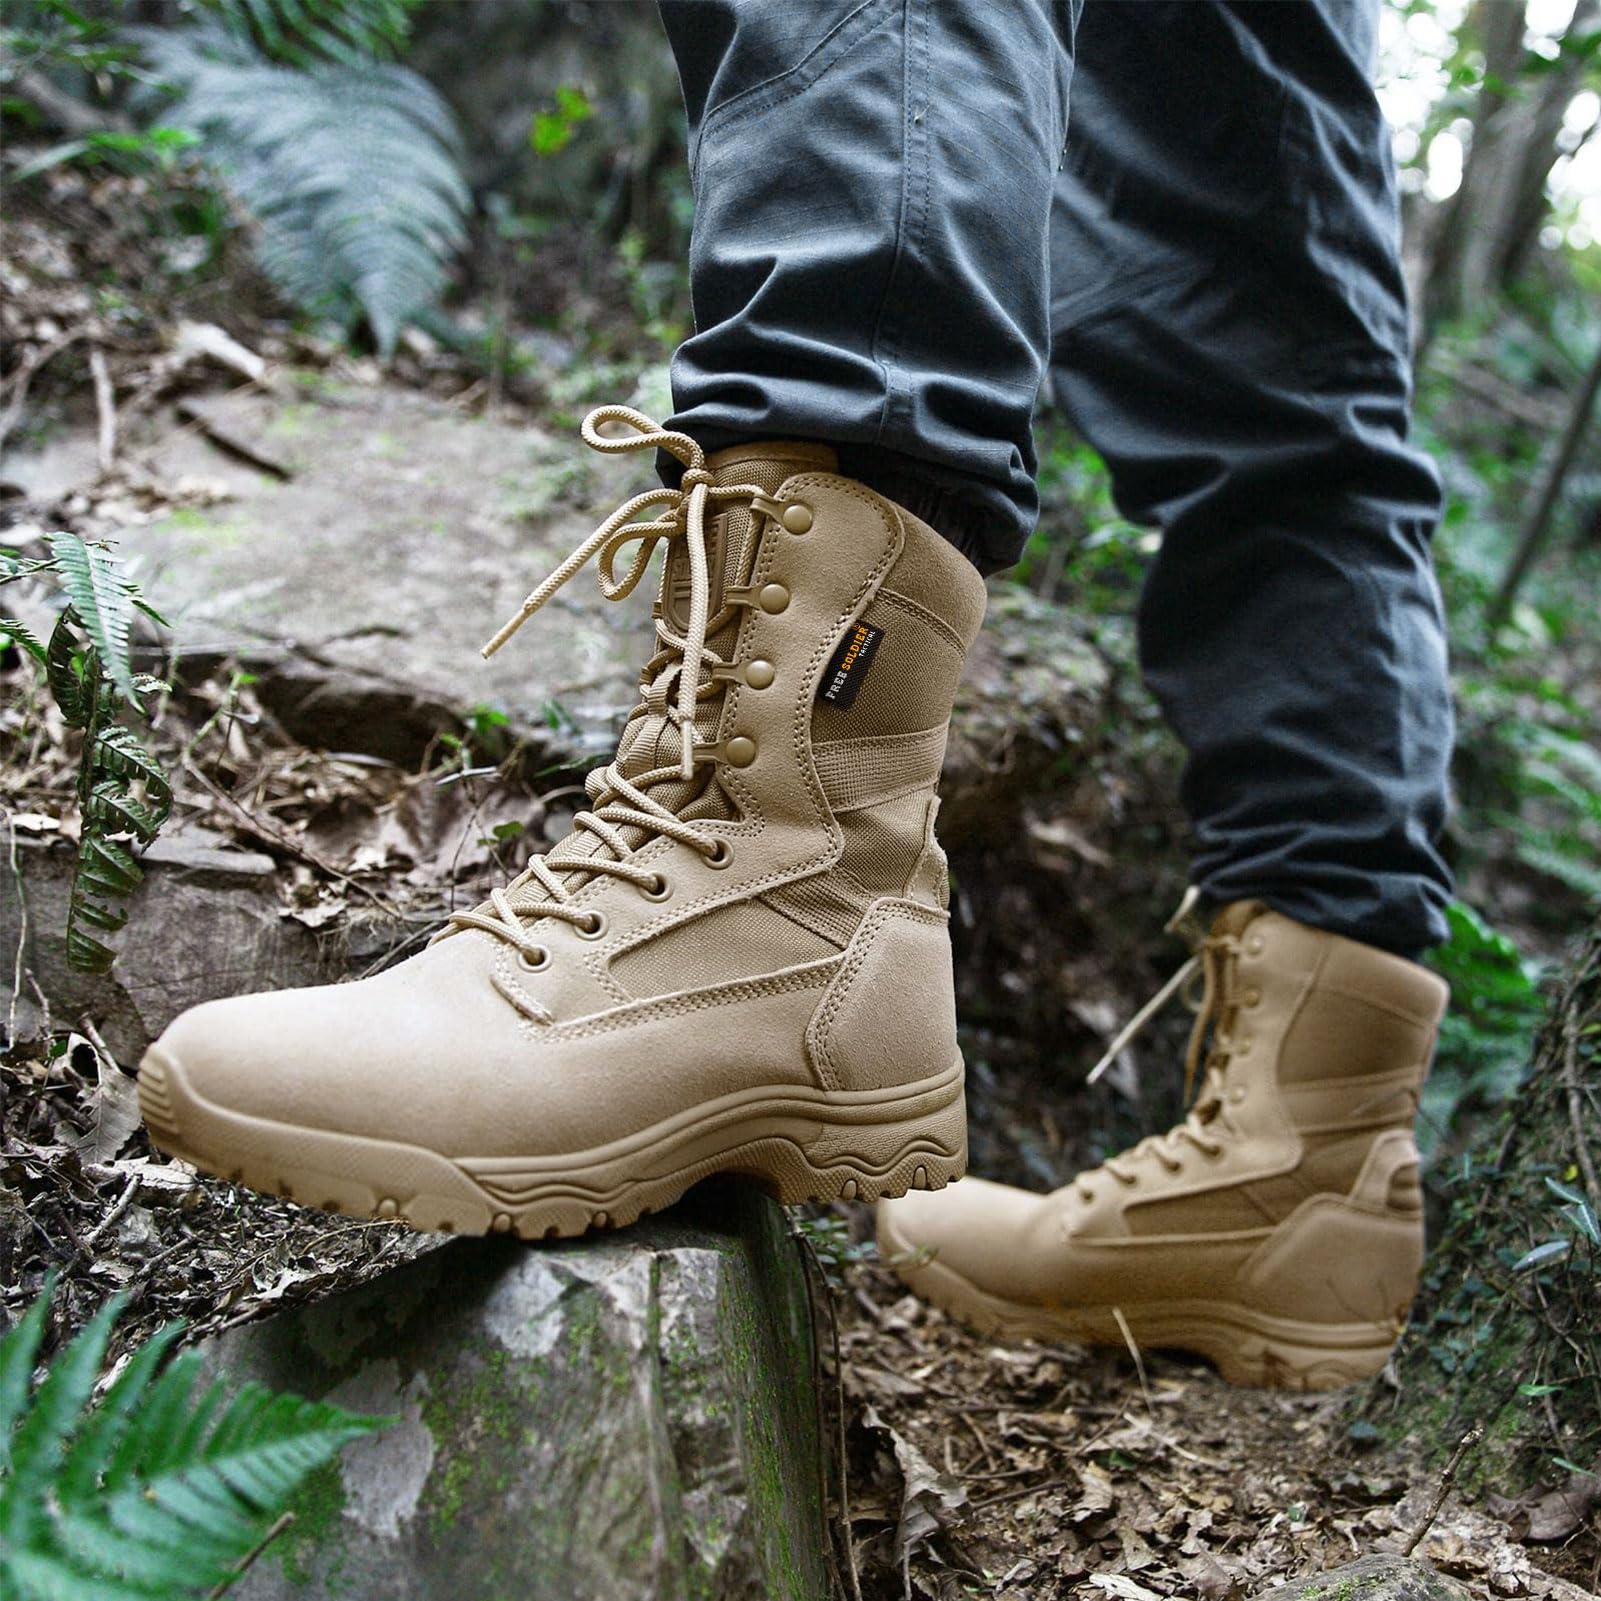 Outdoor desert tactical low-top hiking boots – ANTARCTICA Outdoors